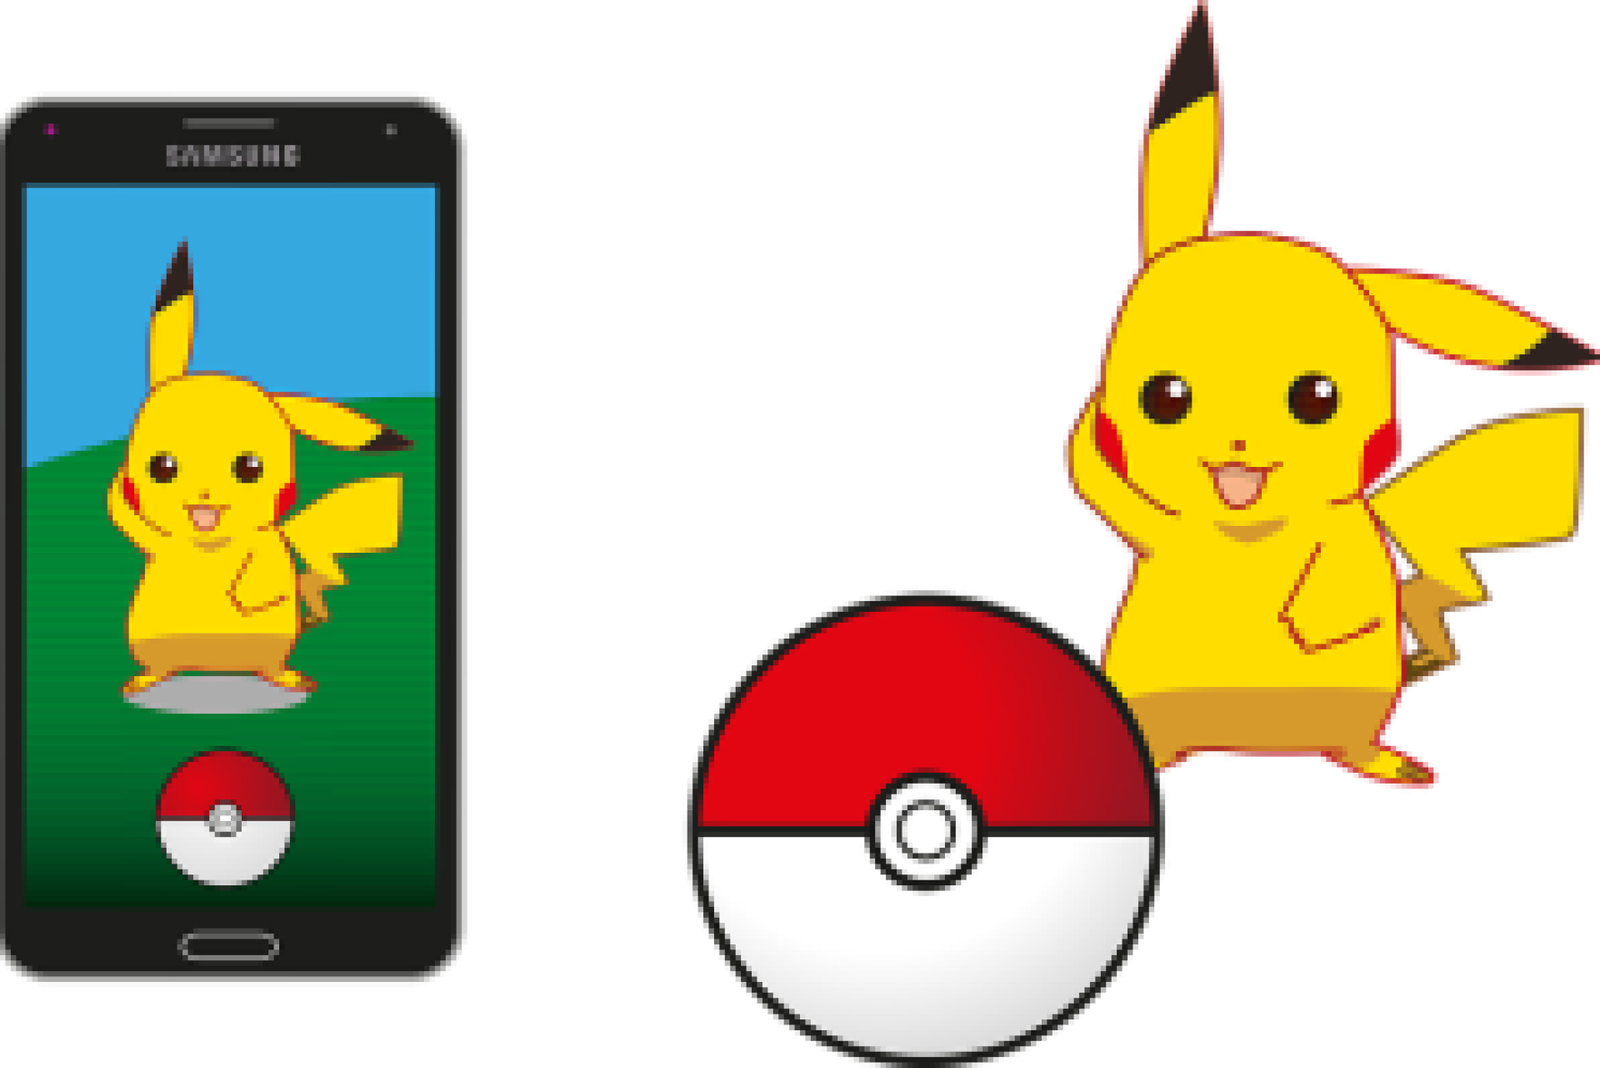 Pikachu App